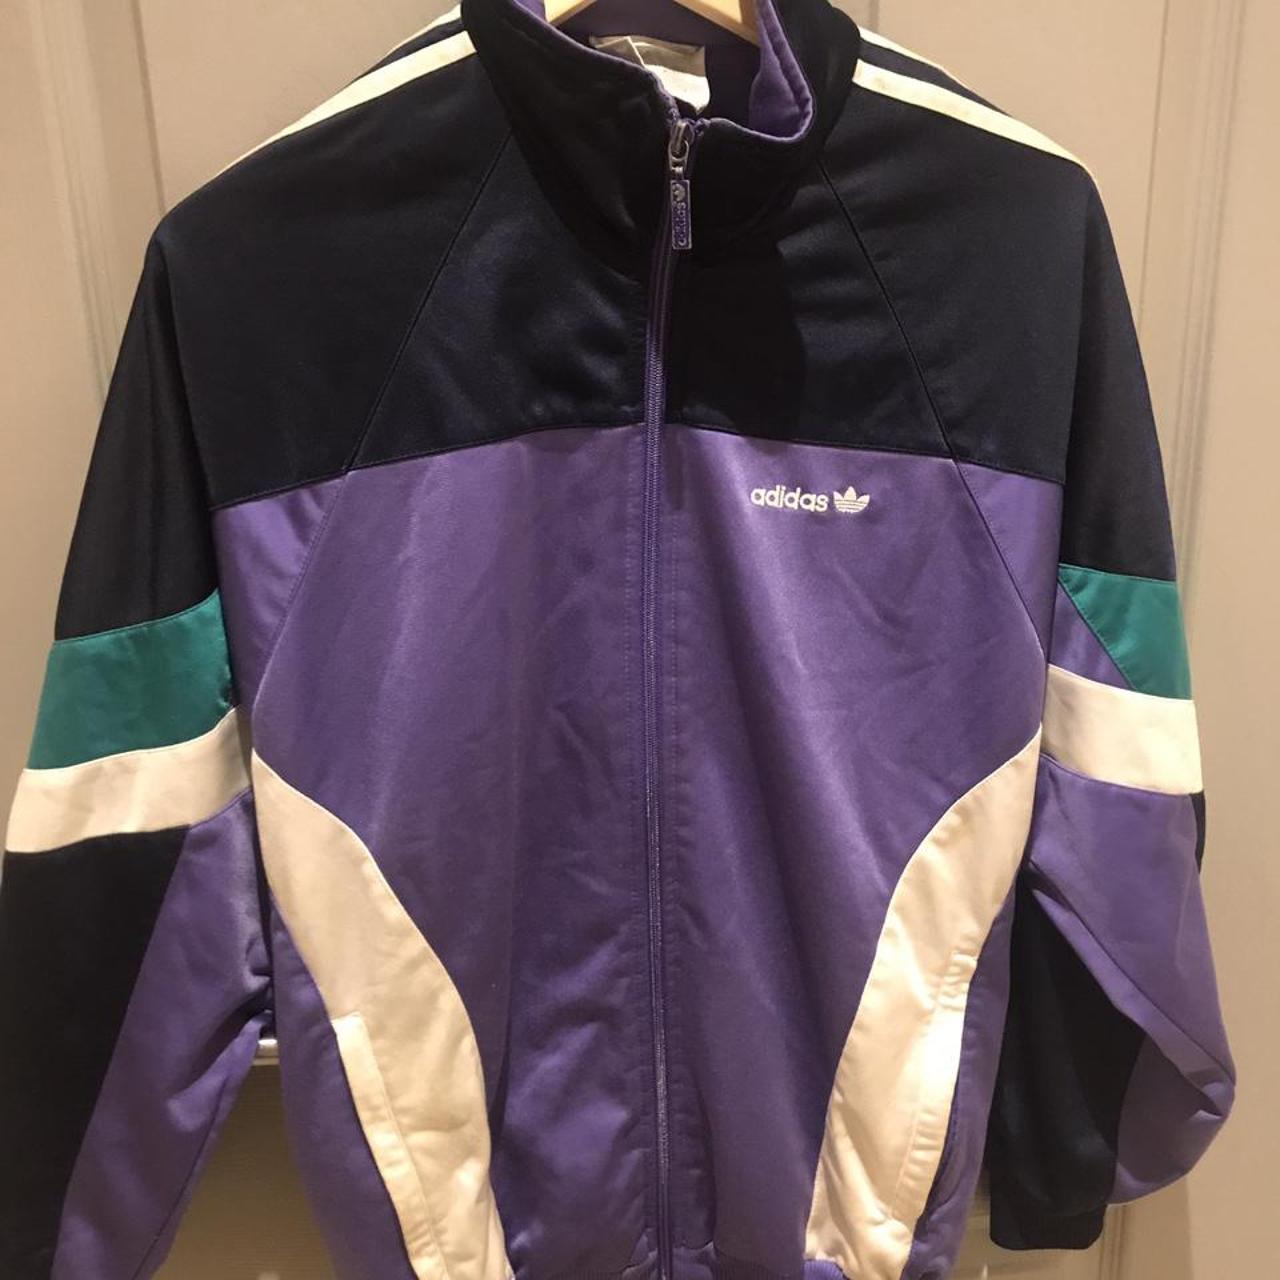 Vintage jacket #adidas #purple #jacket #retro... -